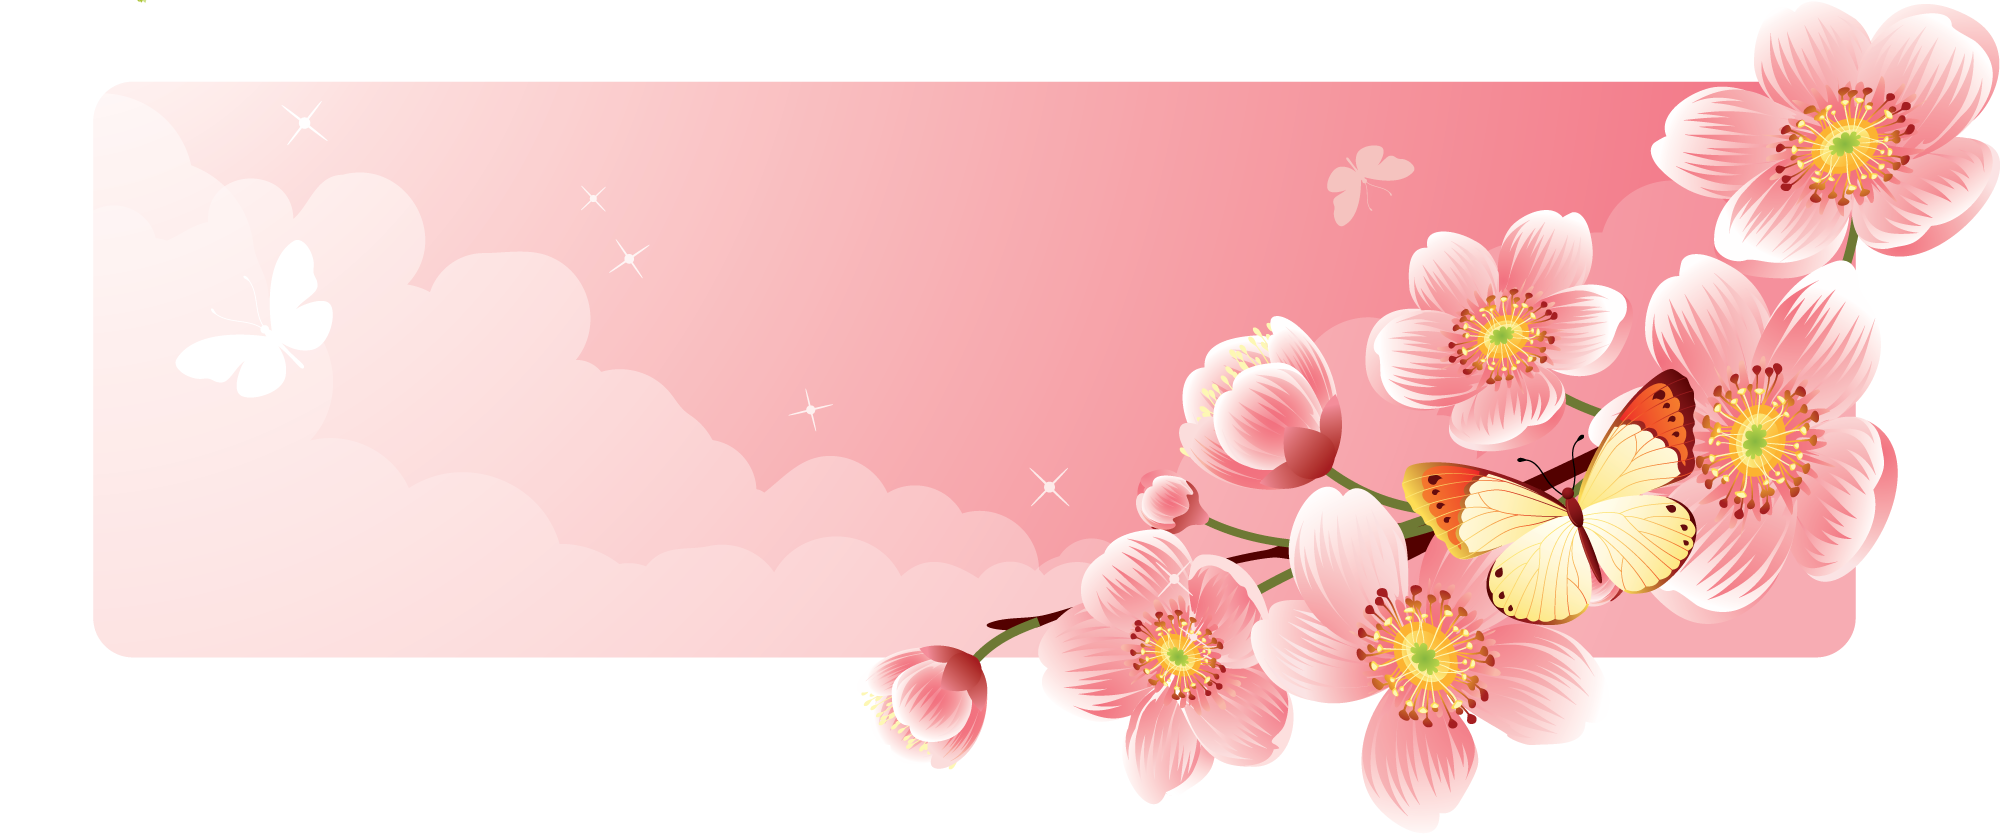 桜 さくら の画像 イラスト フリー素材 No 038 桜バナー ピンク 蝶 雲